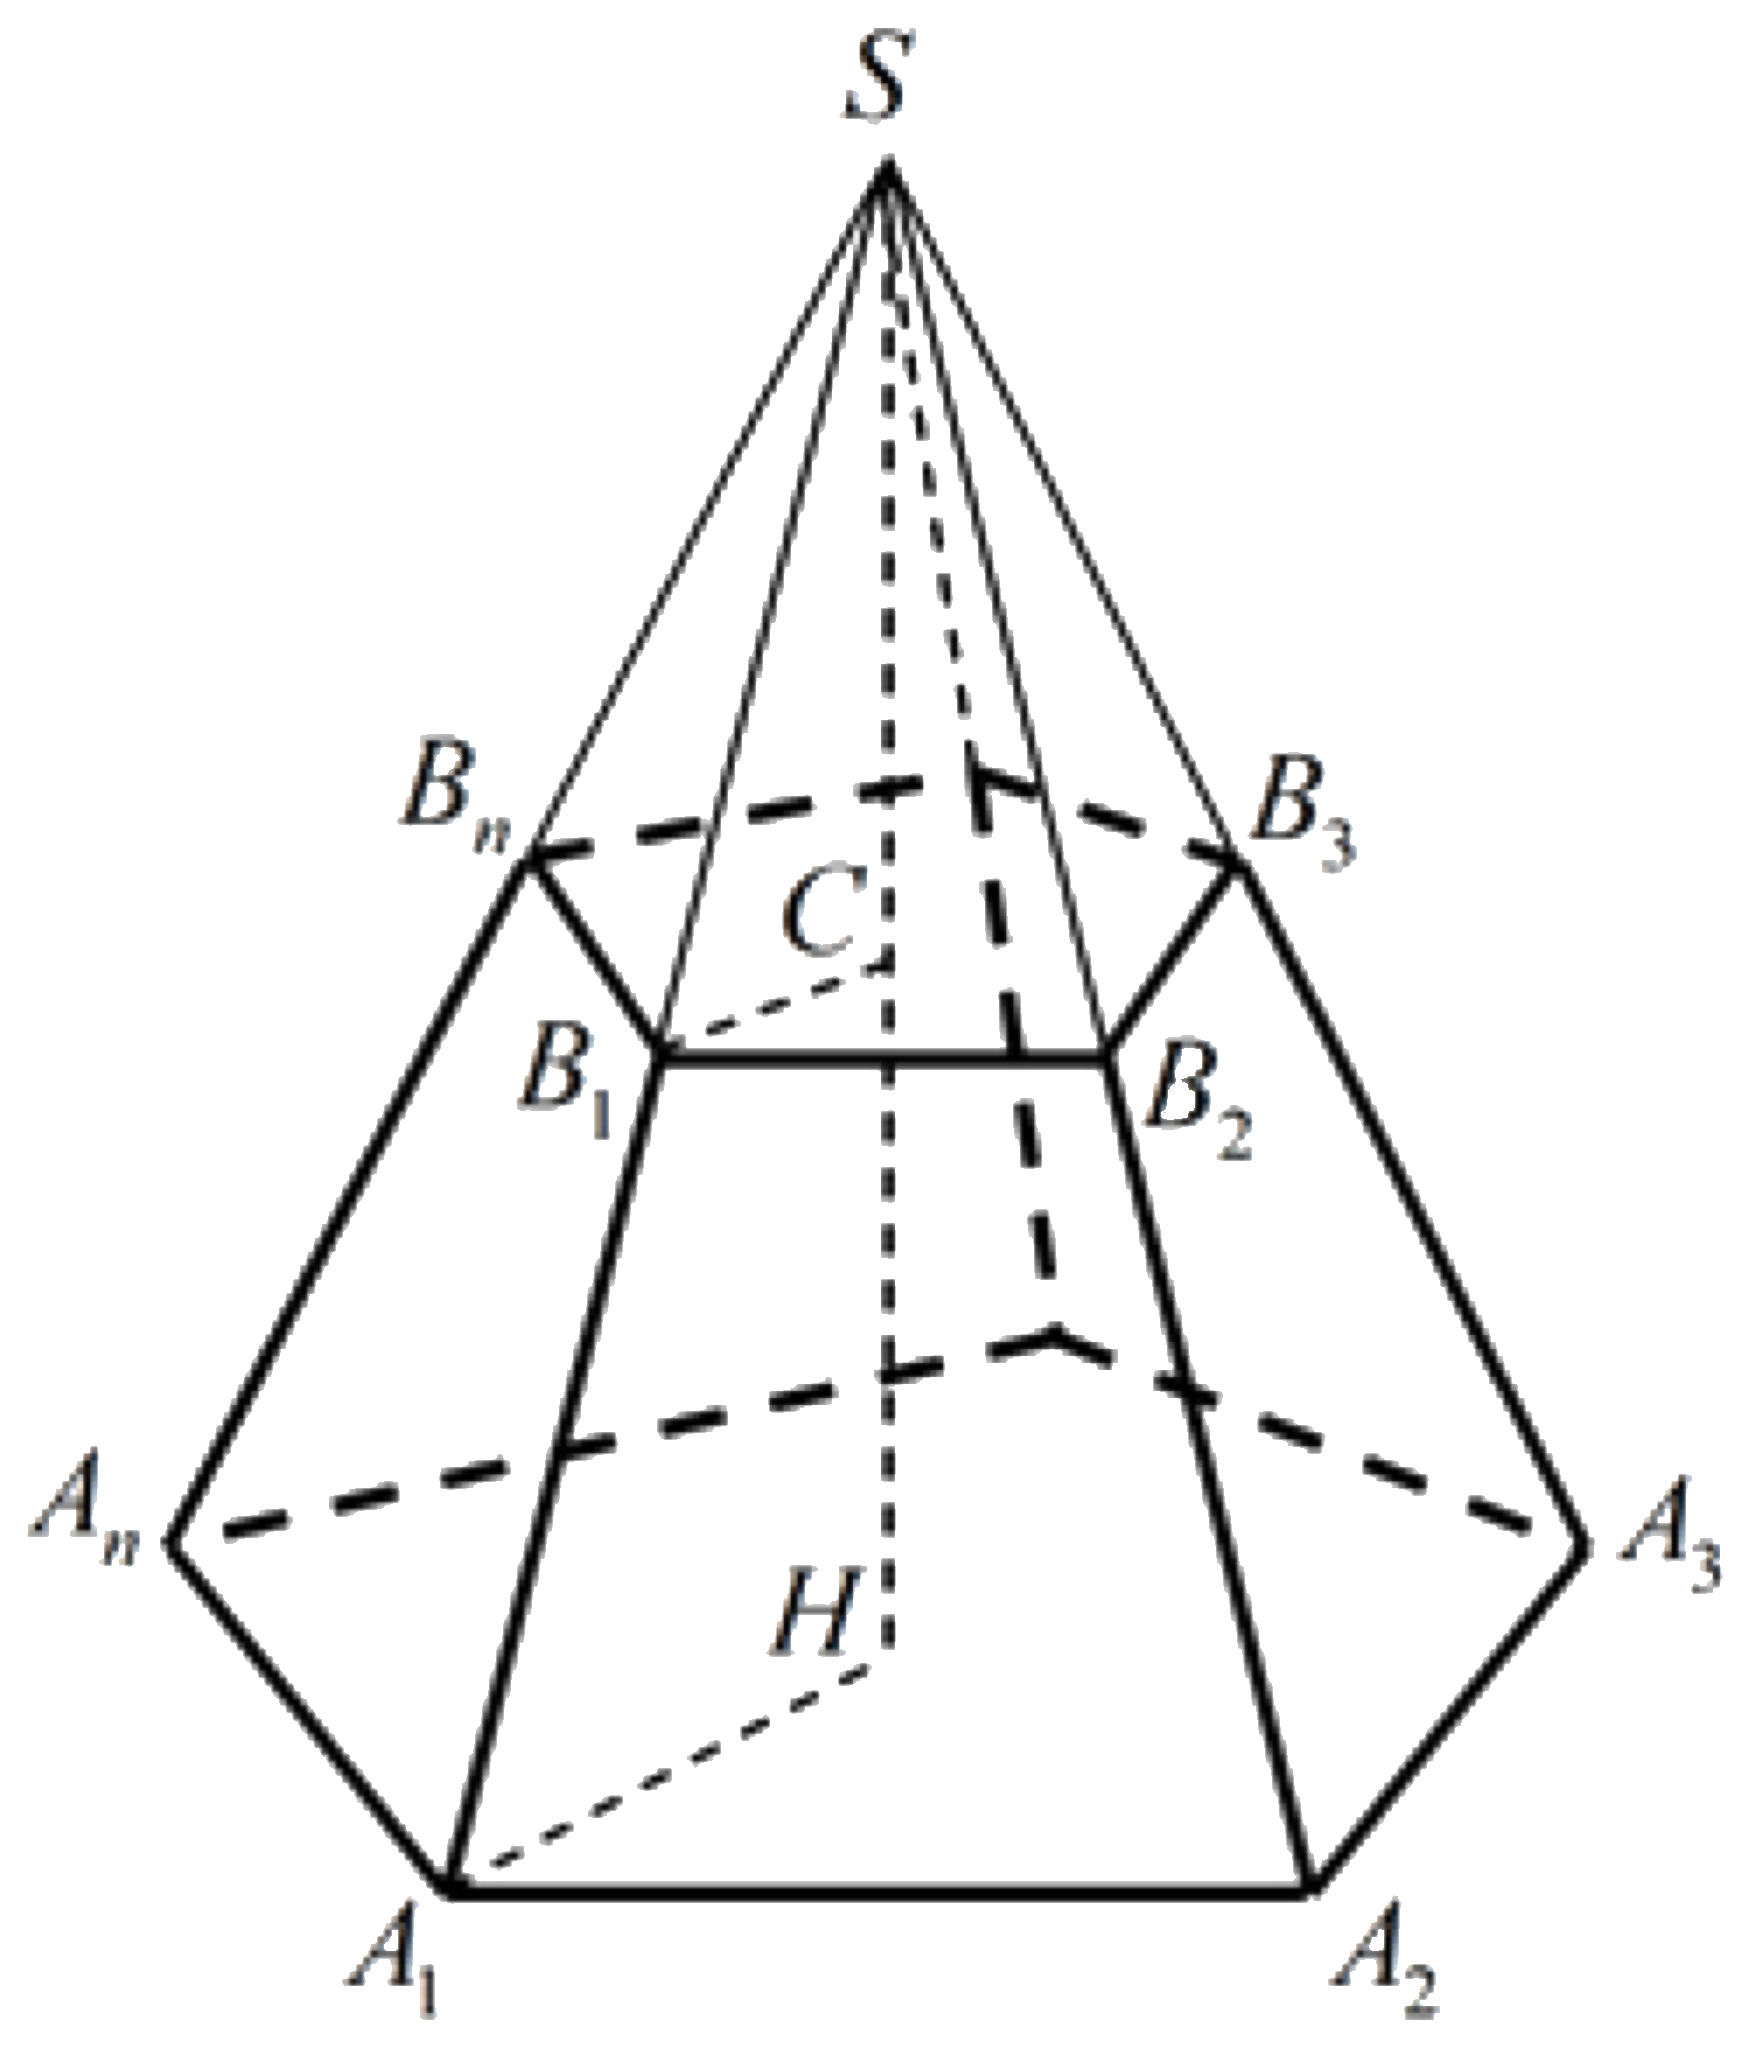 Изобразите шестиугольную пирамиду. Усечённая пятиугольная пирамида. Правильная усеченная десятиугольная пирамида. Правильная усеченная пятиугольная пирамида. Правильная усеченная шестиугольная пирамида.